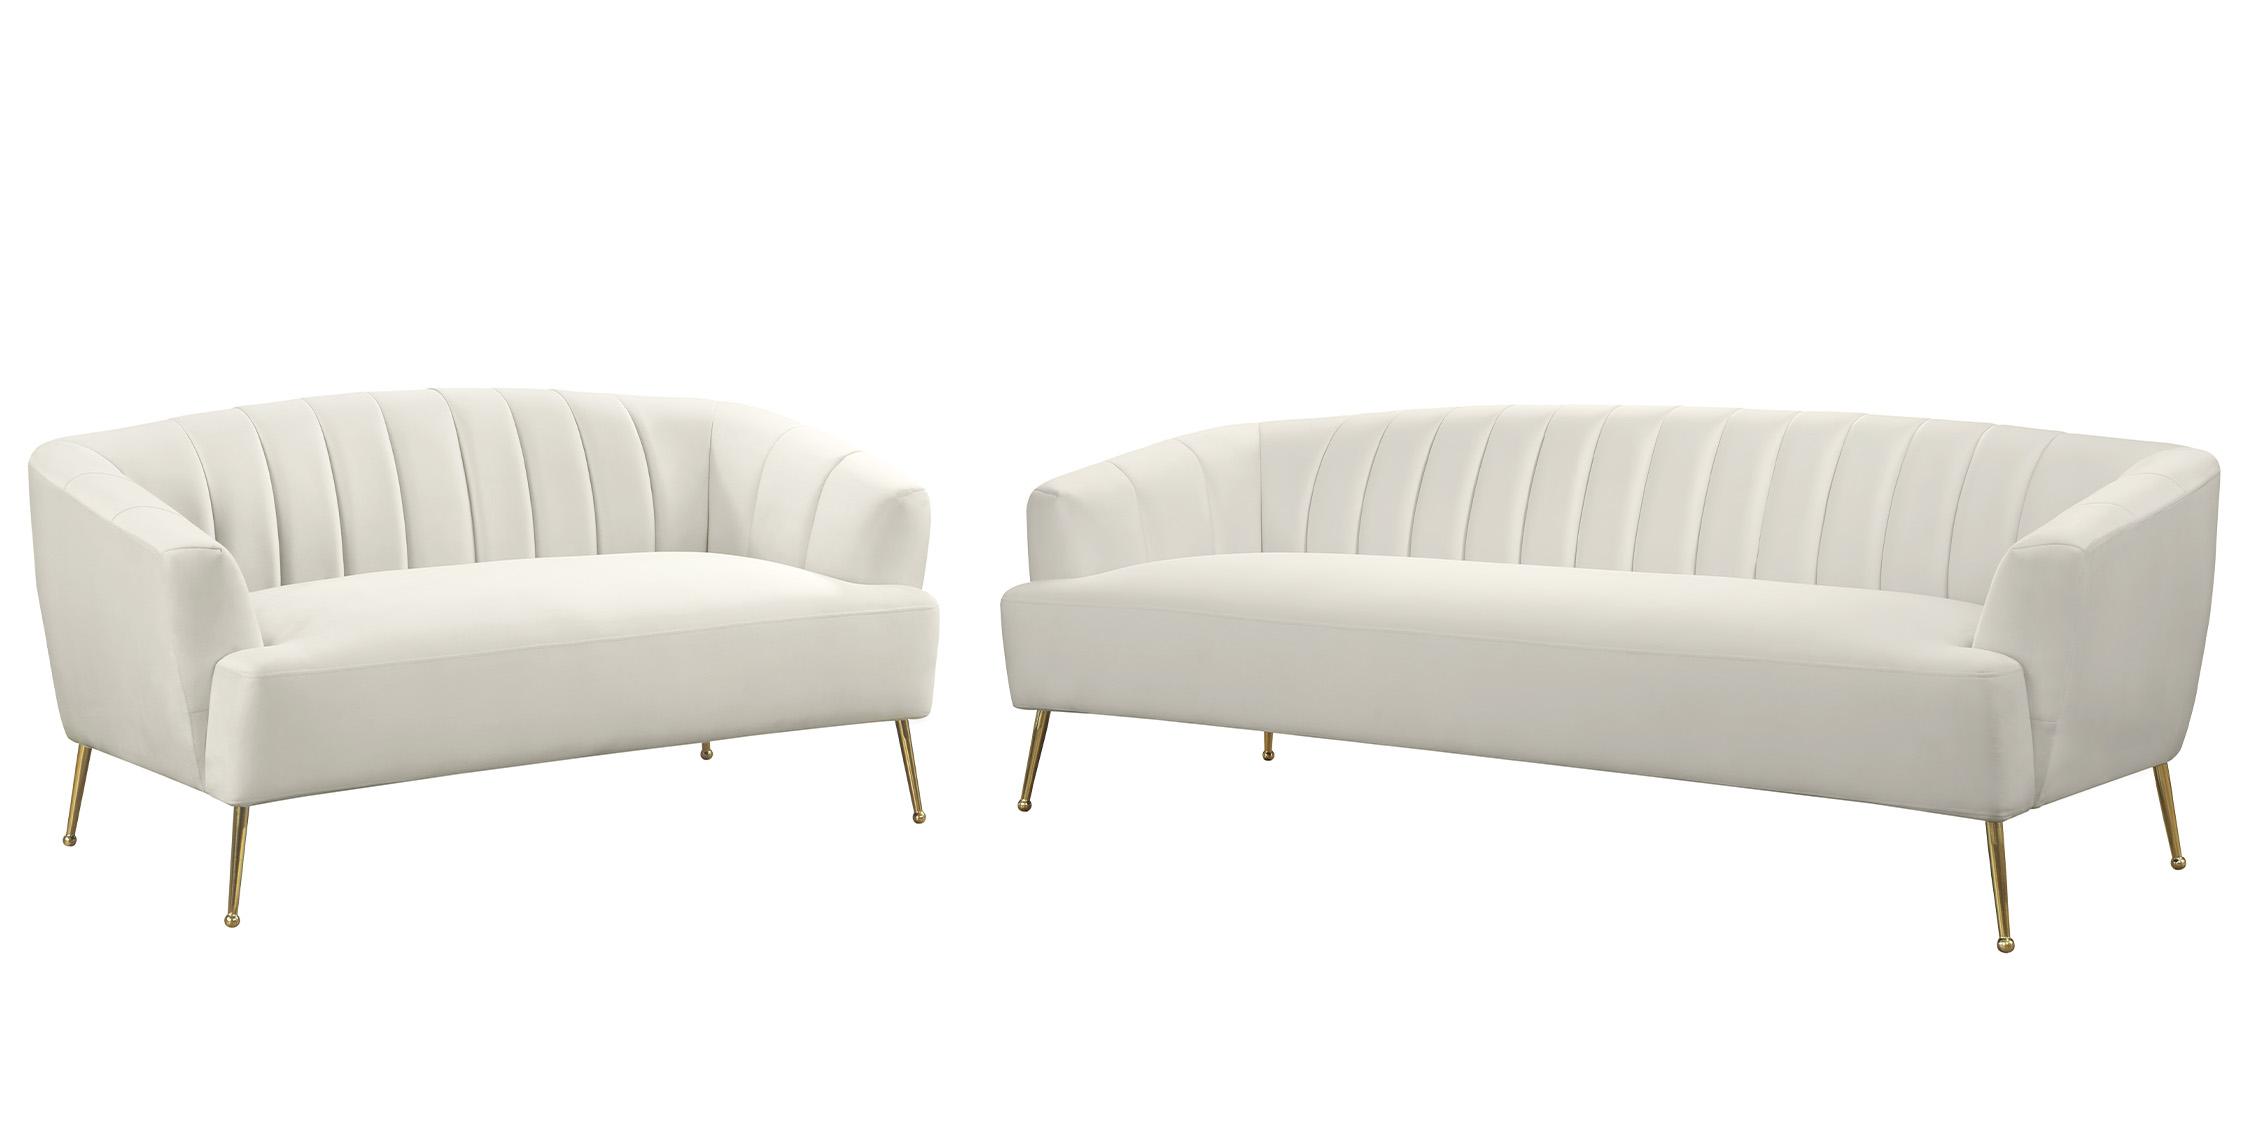 Contemporary, Modern Sofa Set TORI 657Cream 657Cream-S-Set-2 in Cream, Gold Velvet